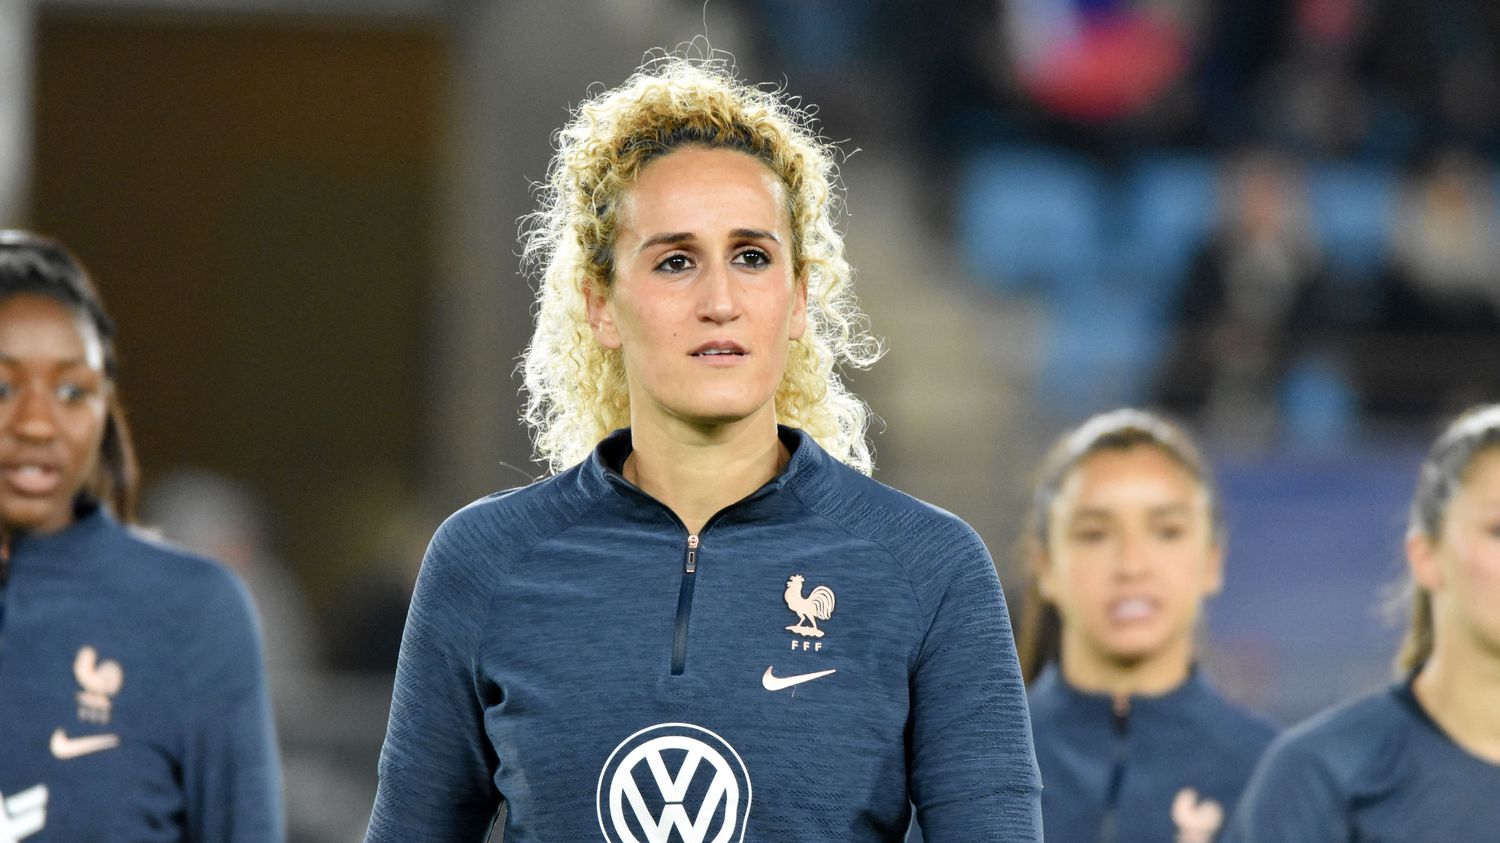 Une joueuse du PSG, Kheira Hamraoui, agressée à la barre de fer, sa coéquipière en garde à vue !